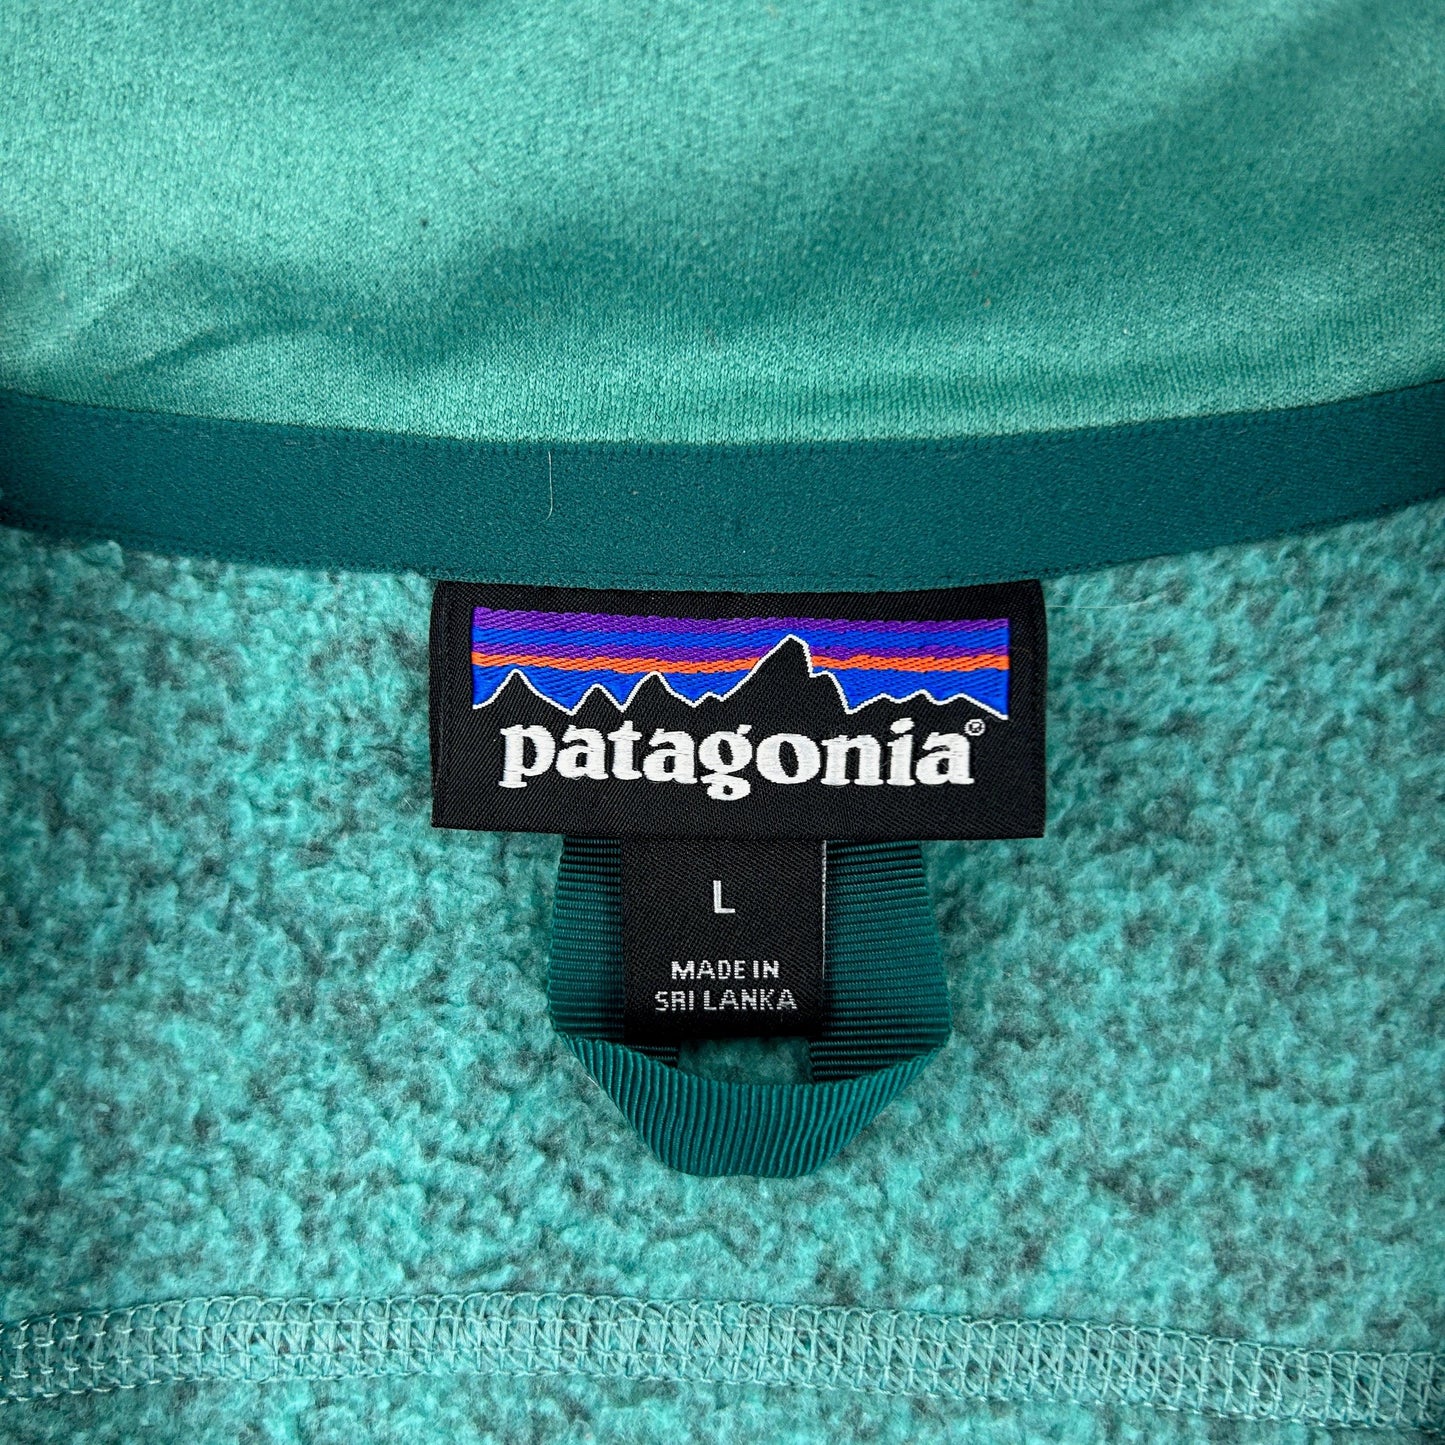 Vintage Patagonia Fleece Vest Woman's Size L - Known Source